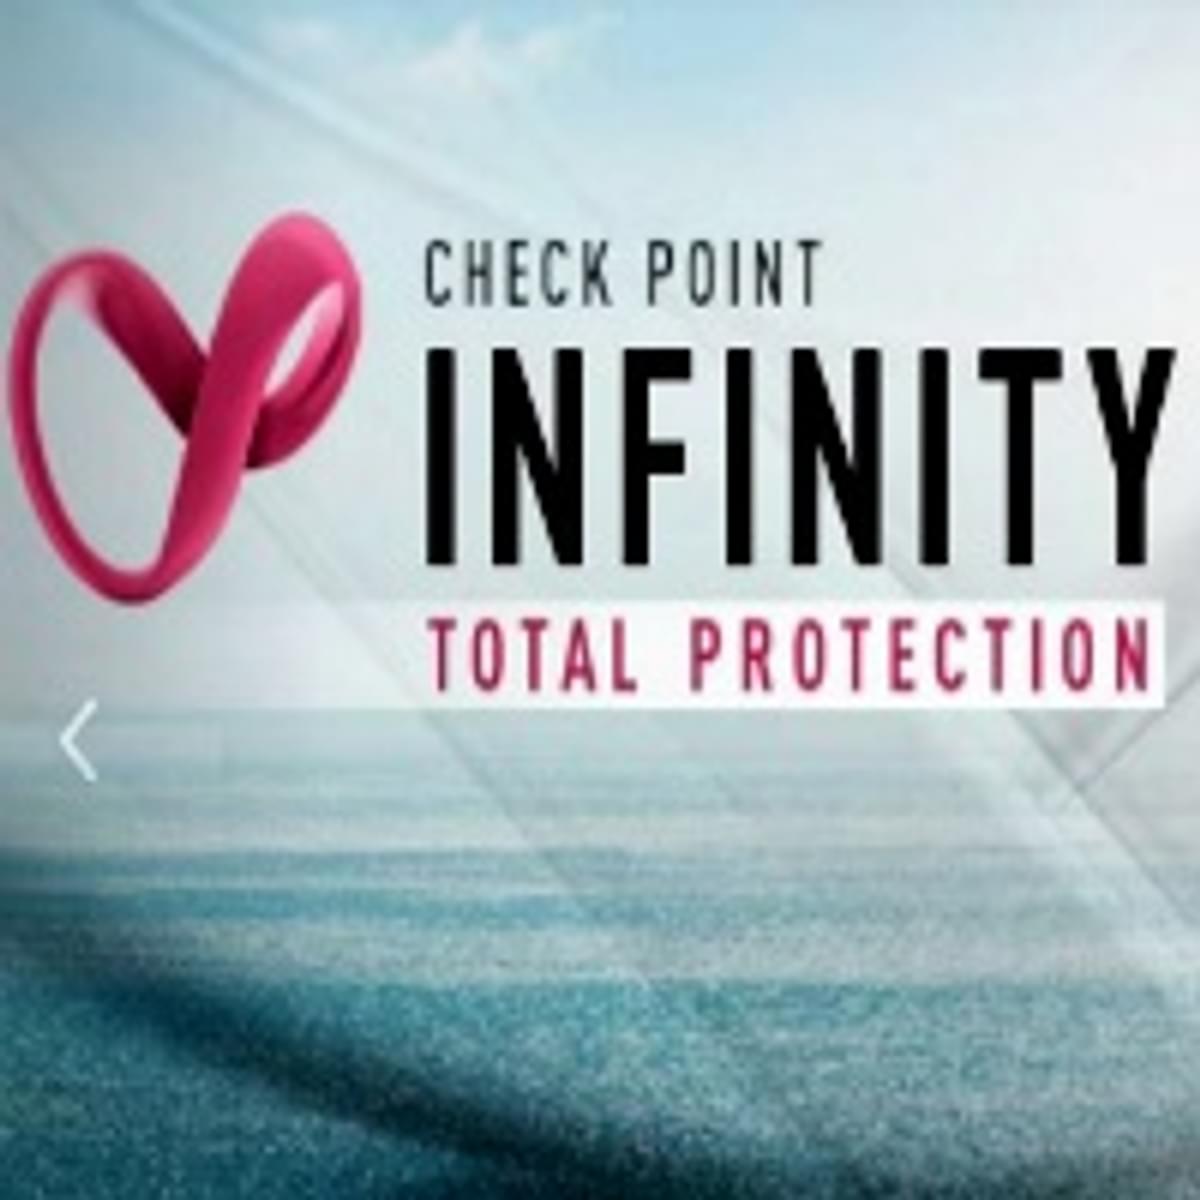 Check Point Infinity Total Protection beschermt tegen nieuwste cyberaanvallen image